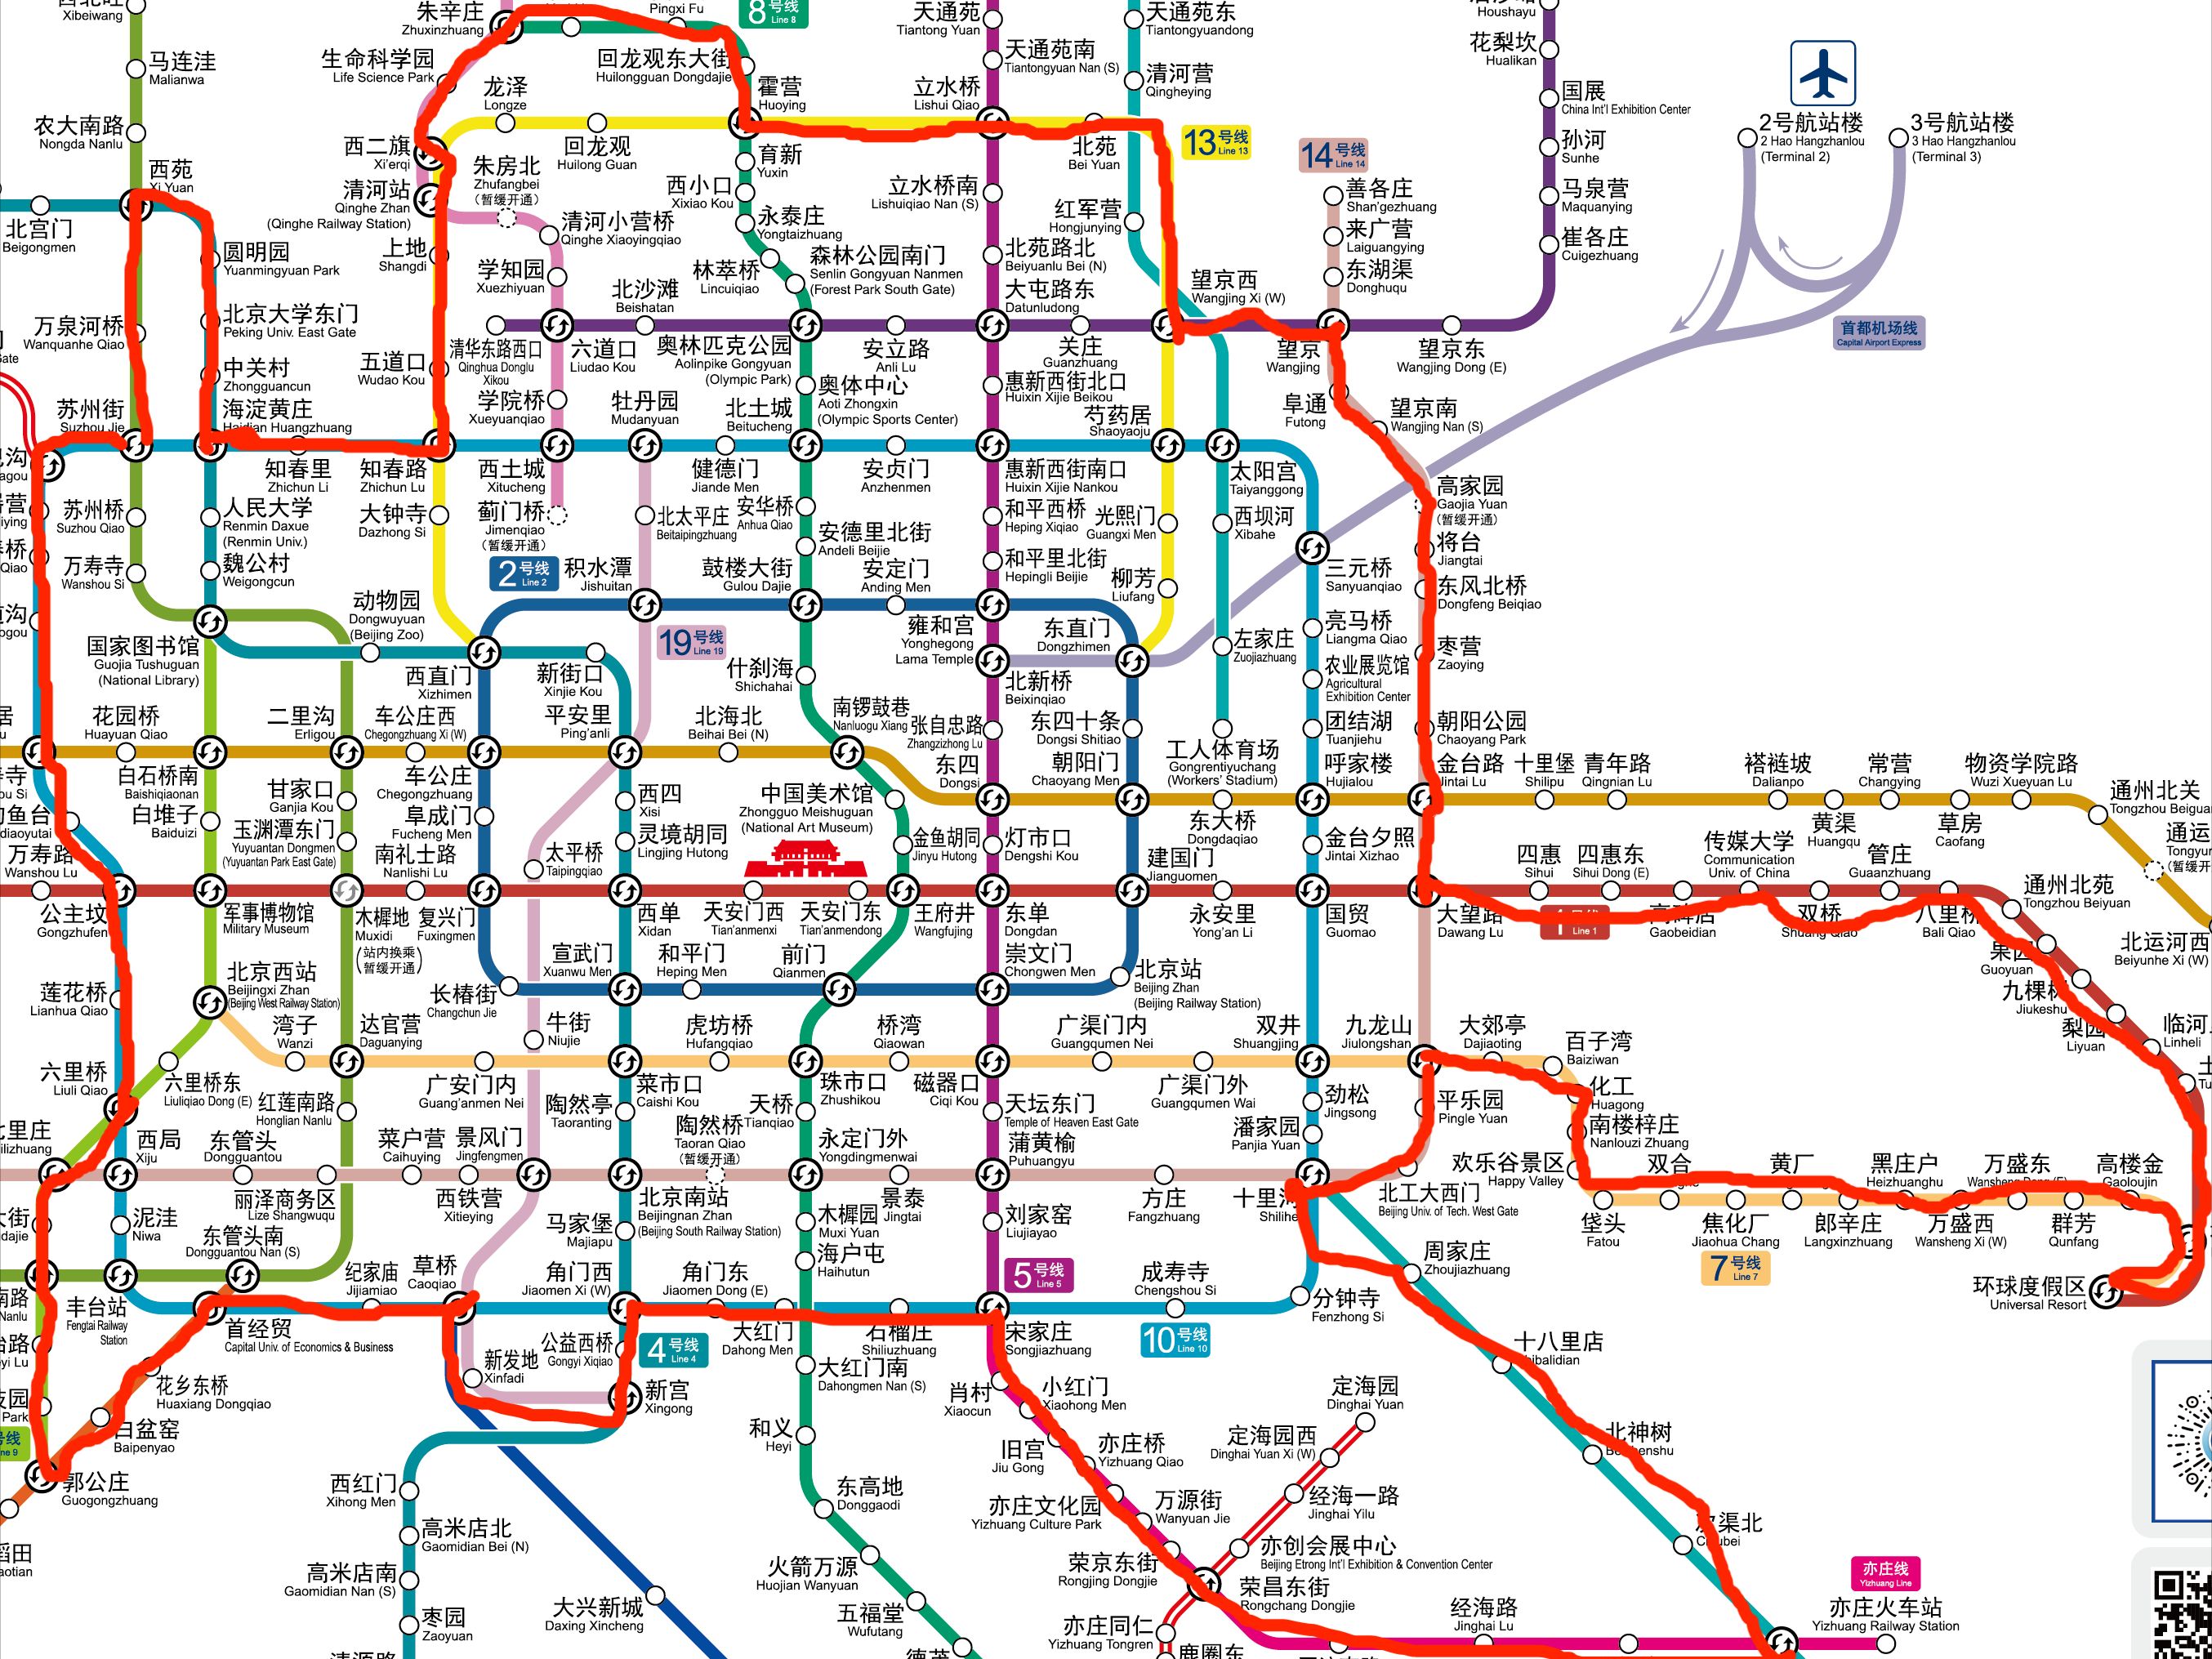 北京地铁图超清可放大图片